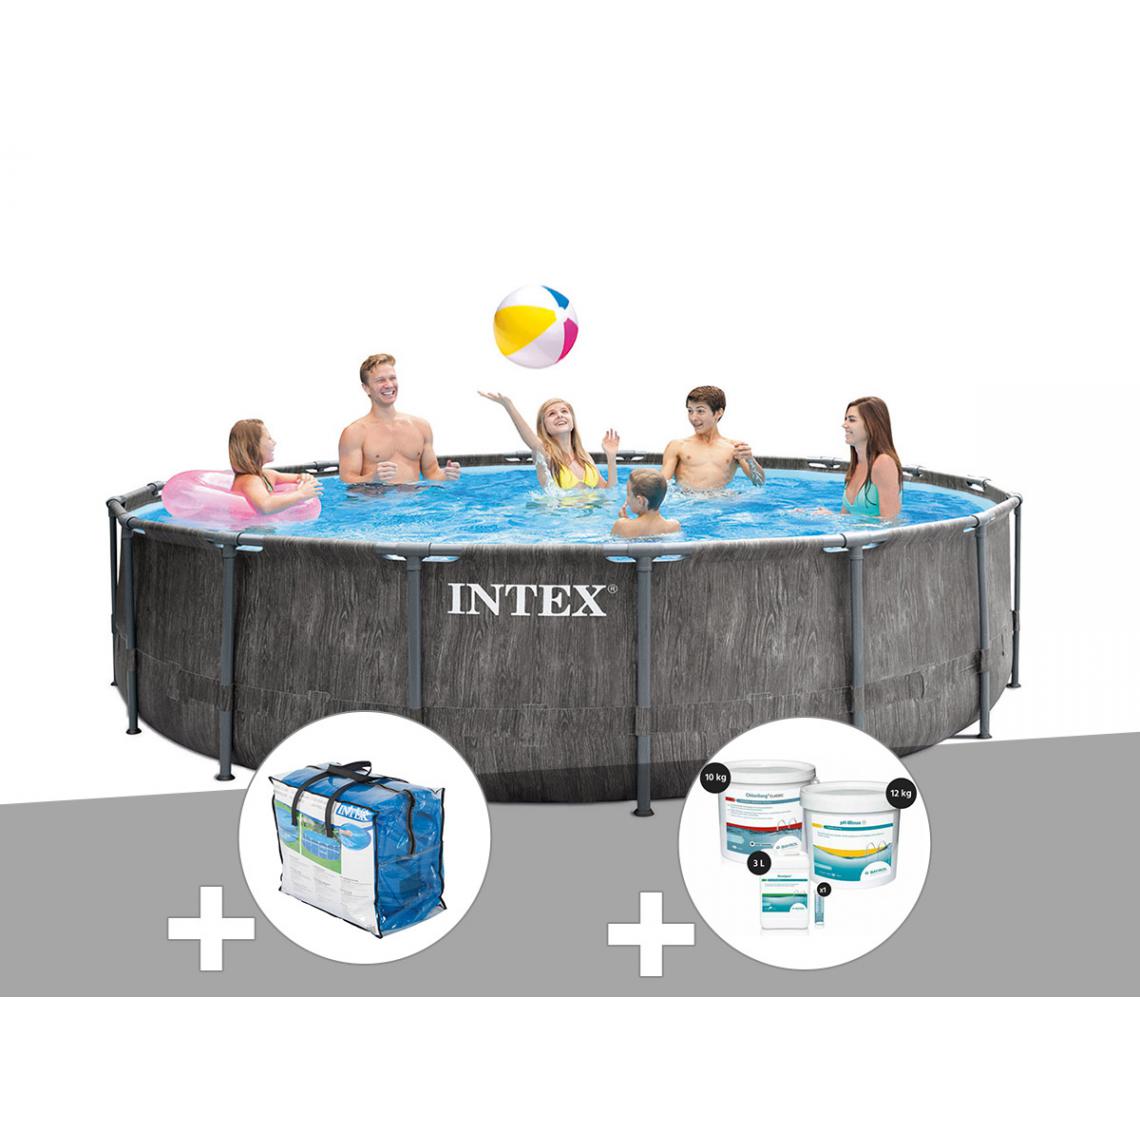 Intex - Kit piscine tubulaire Intex Baltik ronde 5,49 x 1,22 m + Bâche à bulles + Kit de traitement au chlore - Piscine Tubulaire